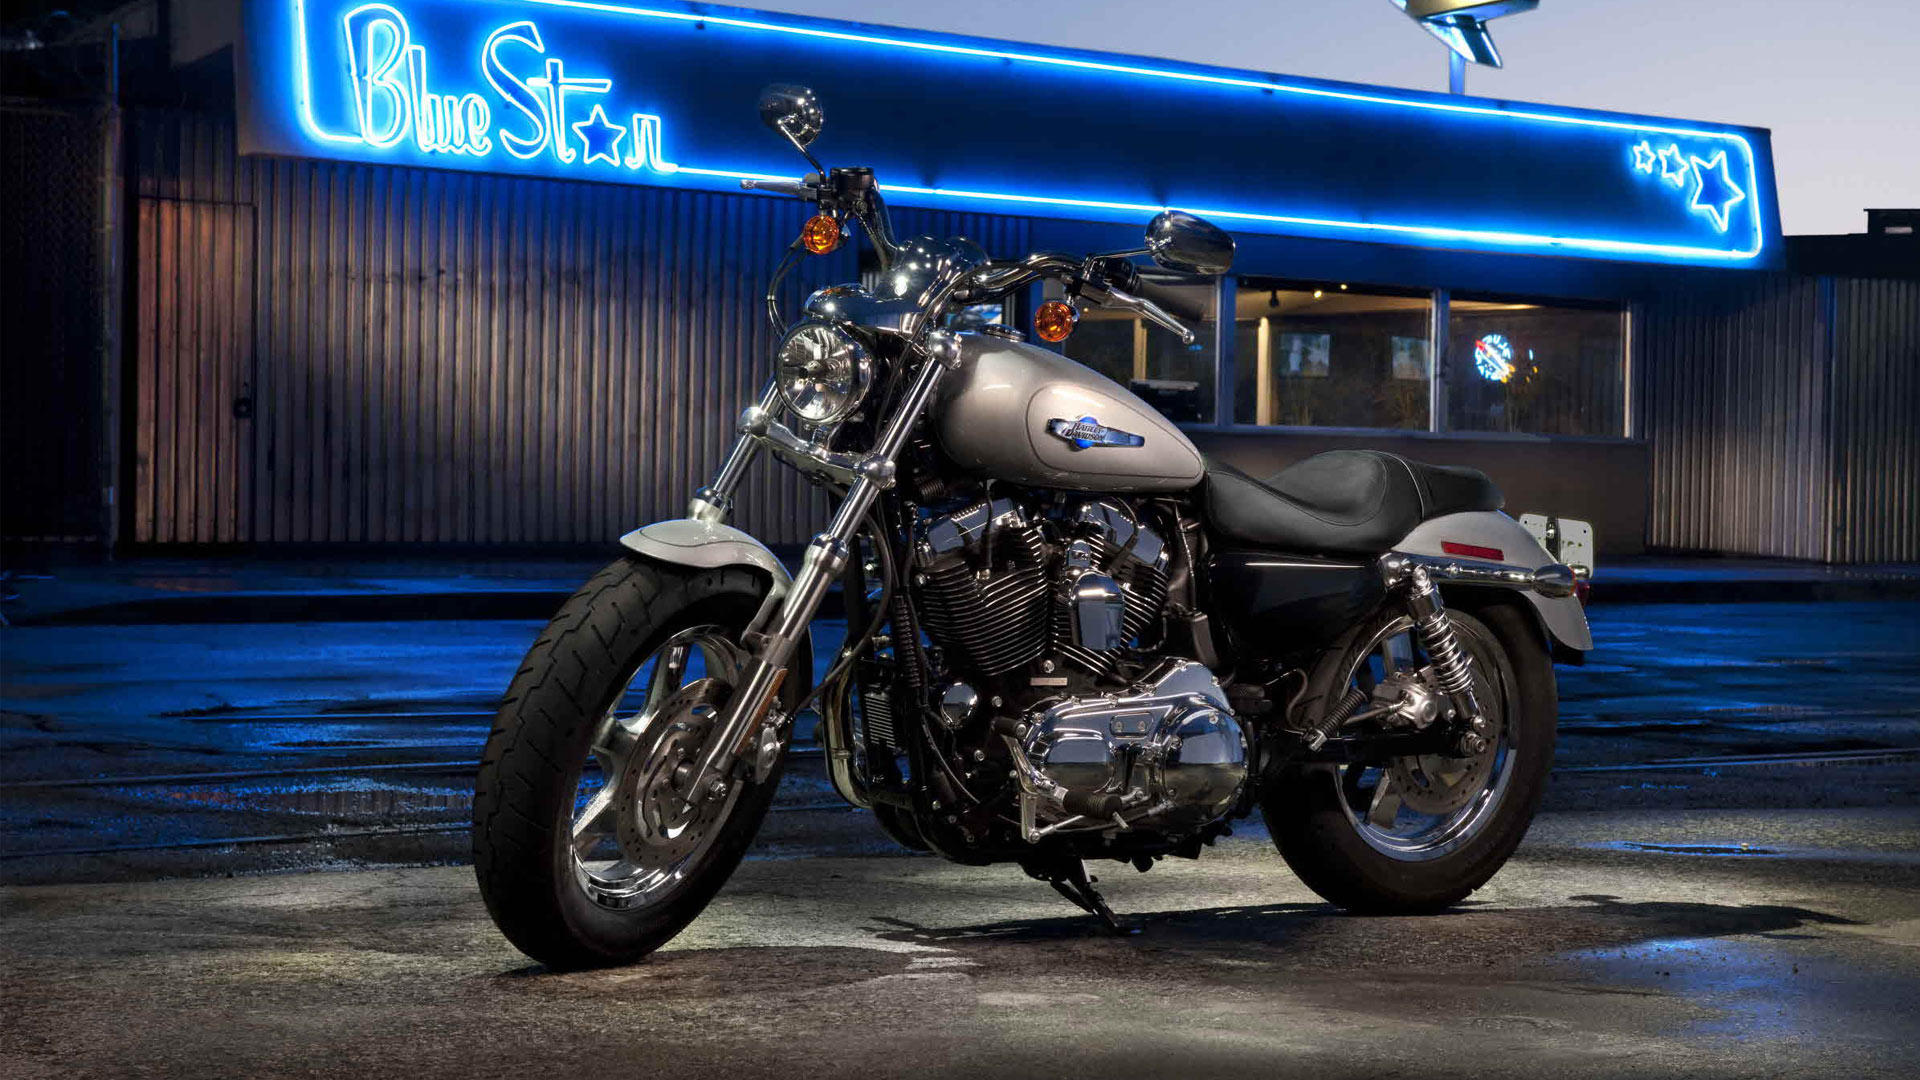 Descargar fondos de escritorio de Harley Davidson Sportster HD